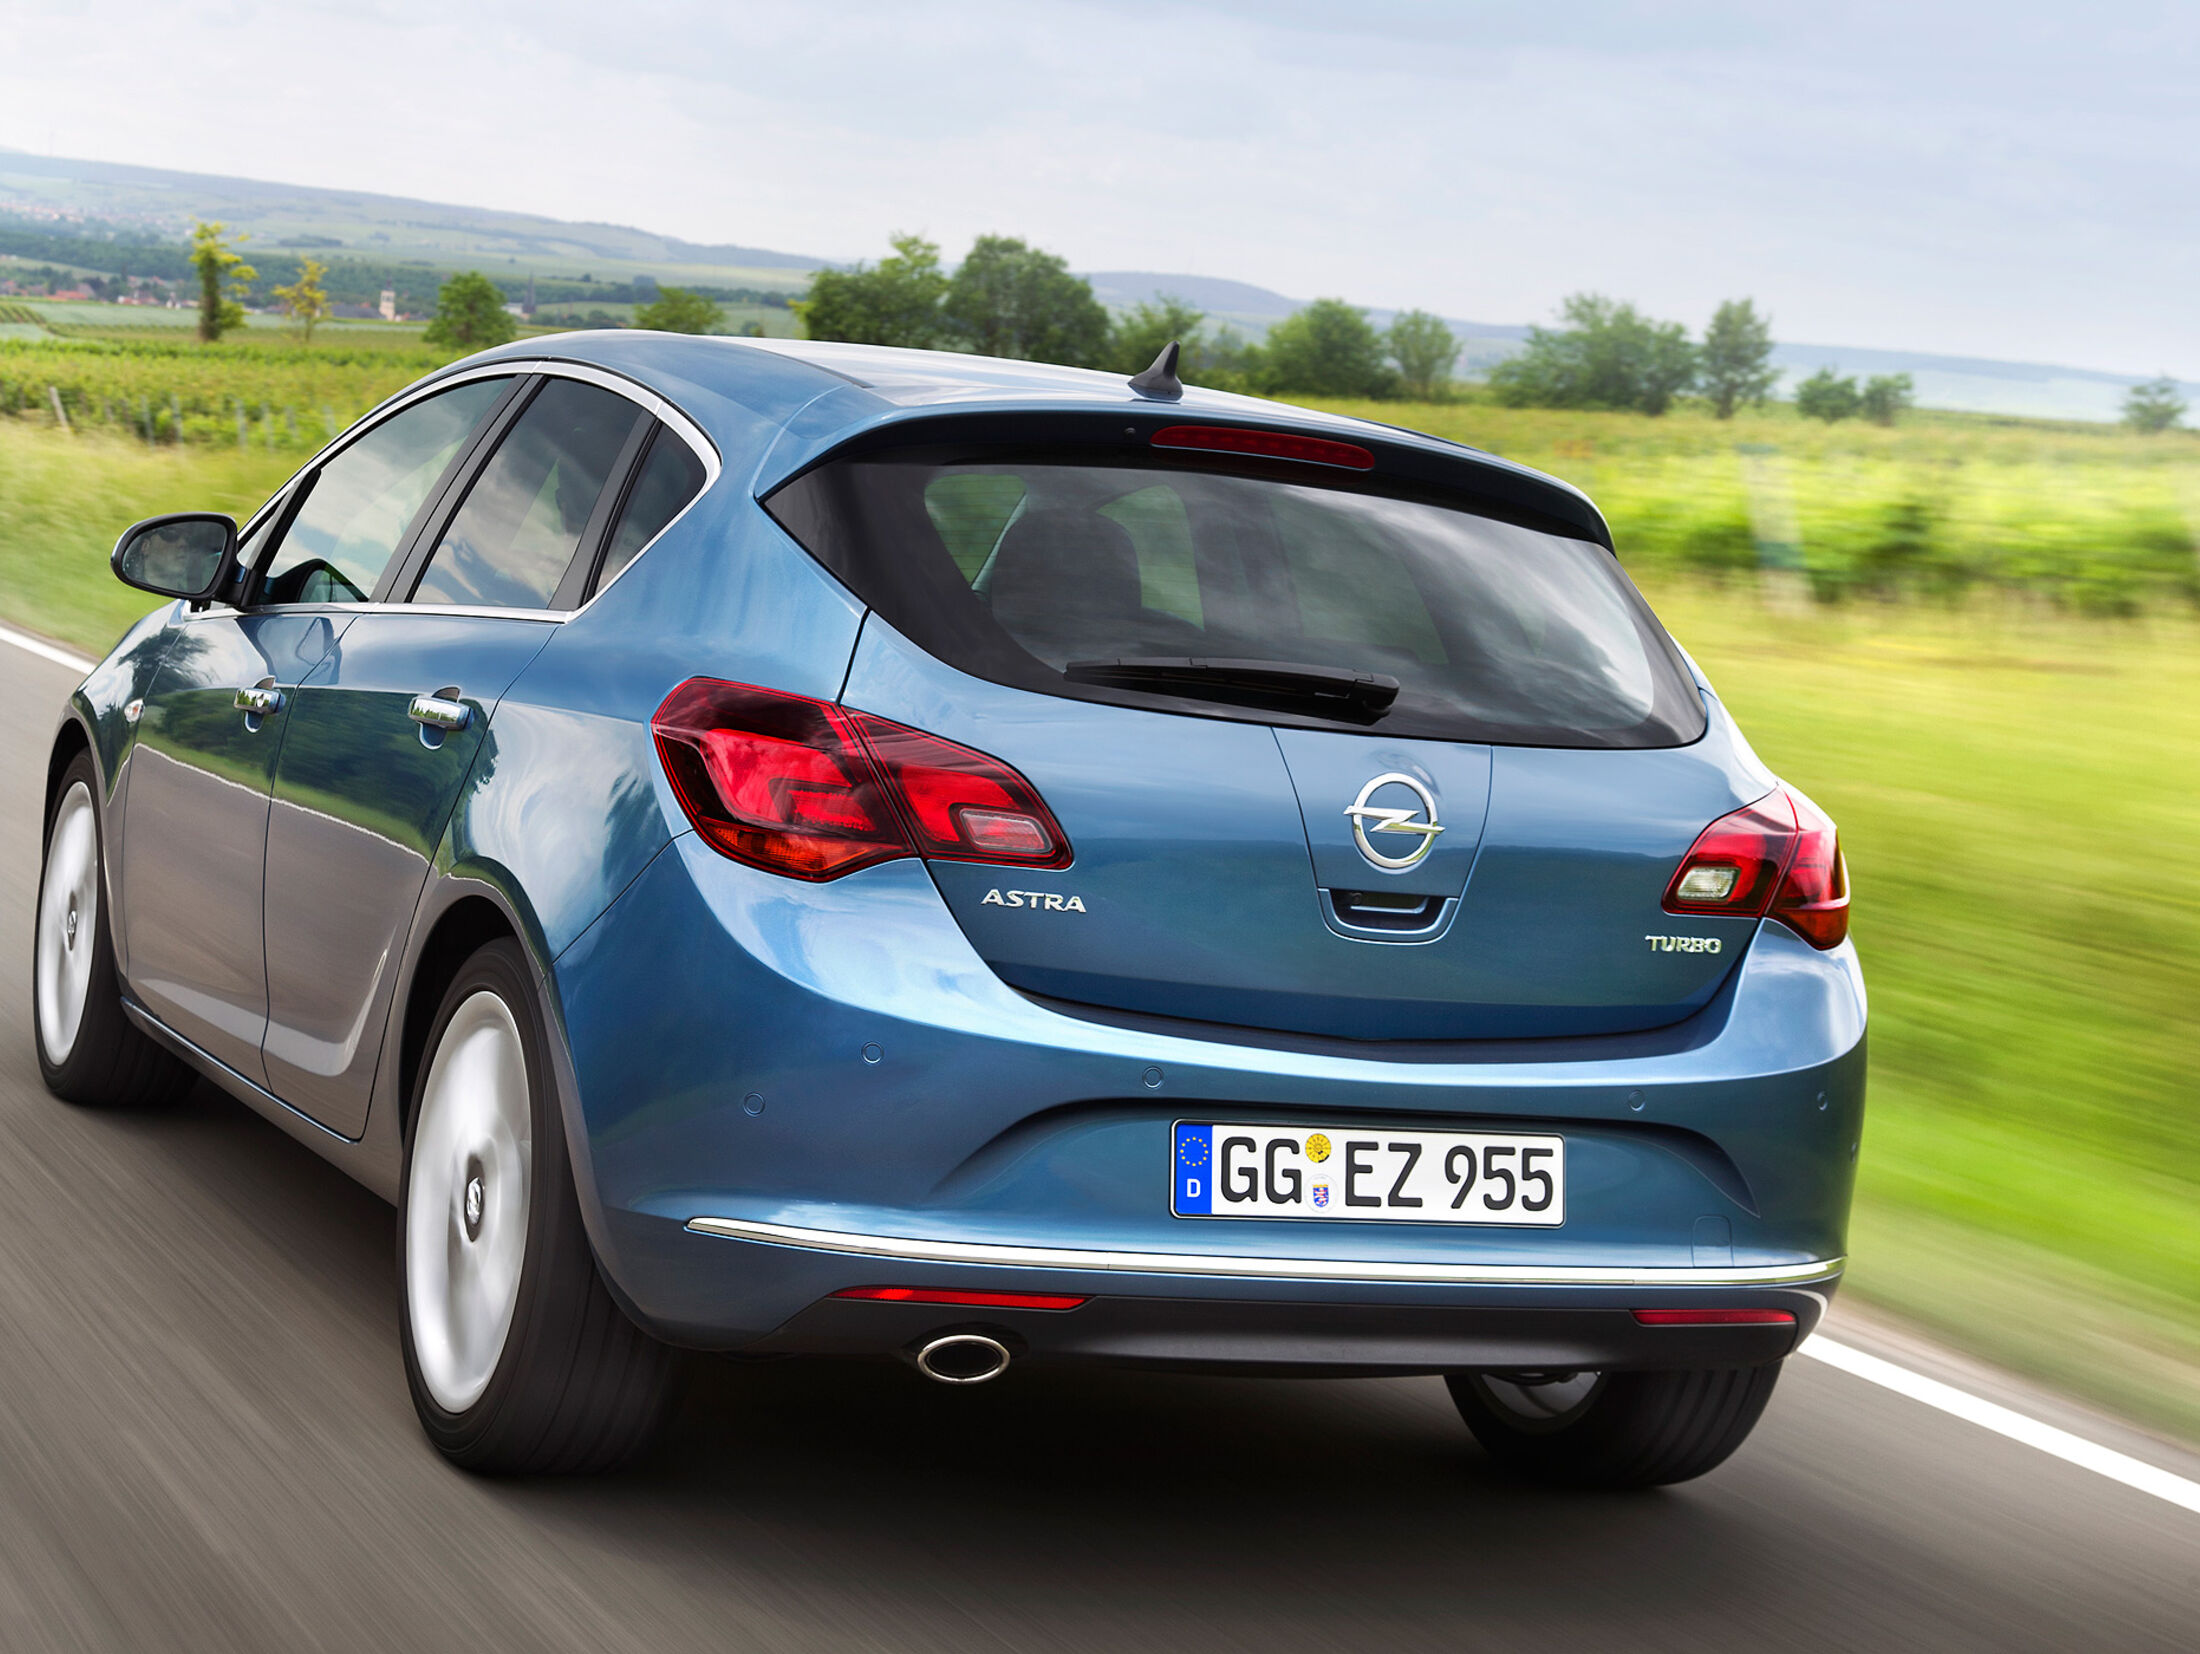 Diesel Abgas-Vorwurfe: Opel Zafira und Astra unter Beschuss